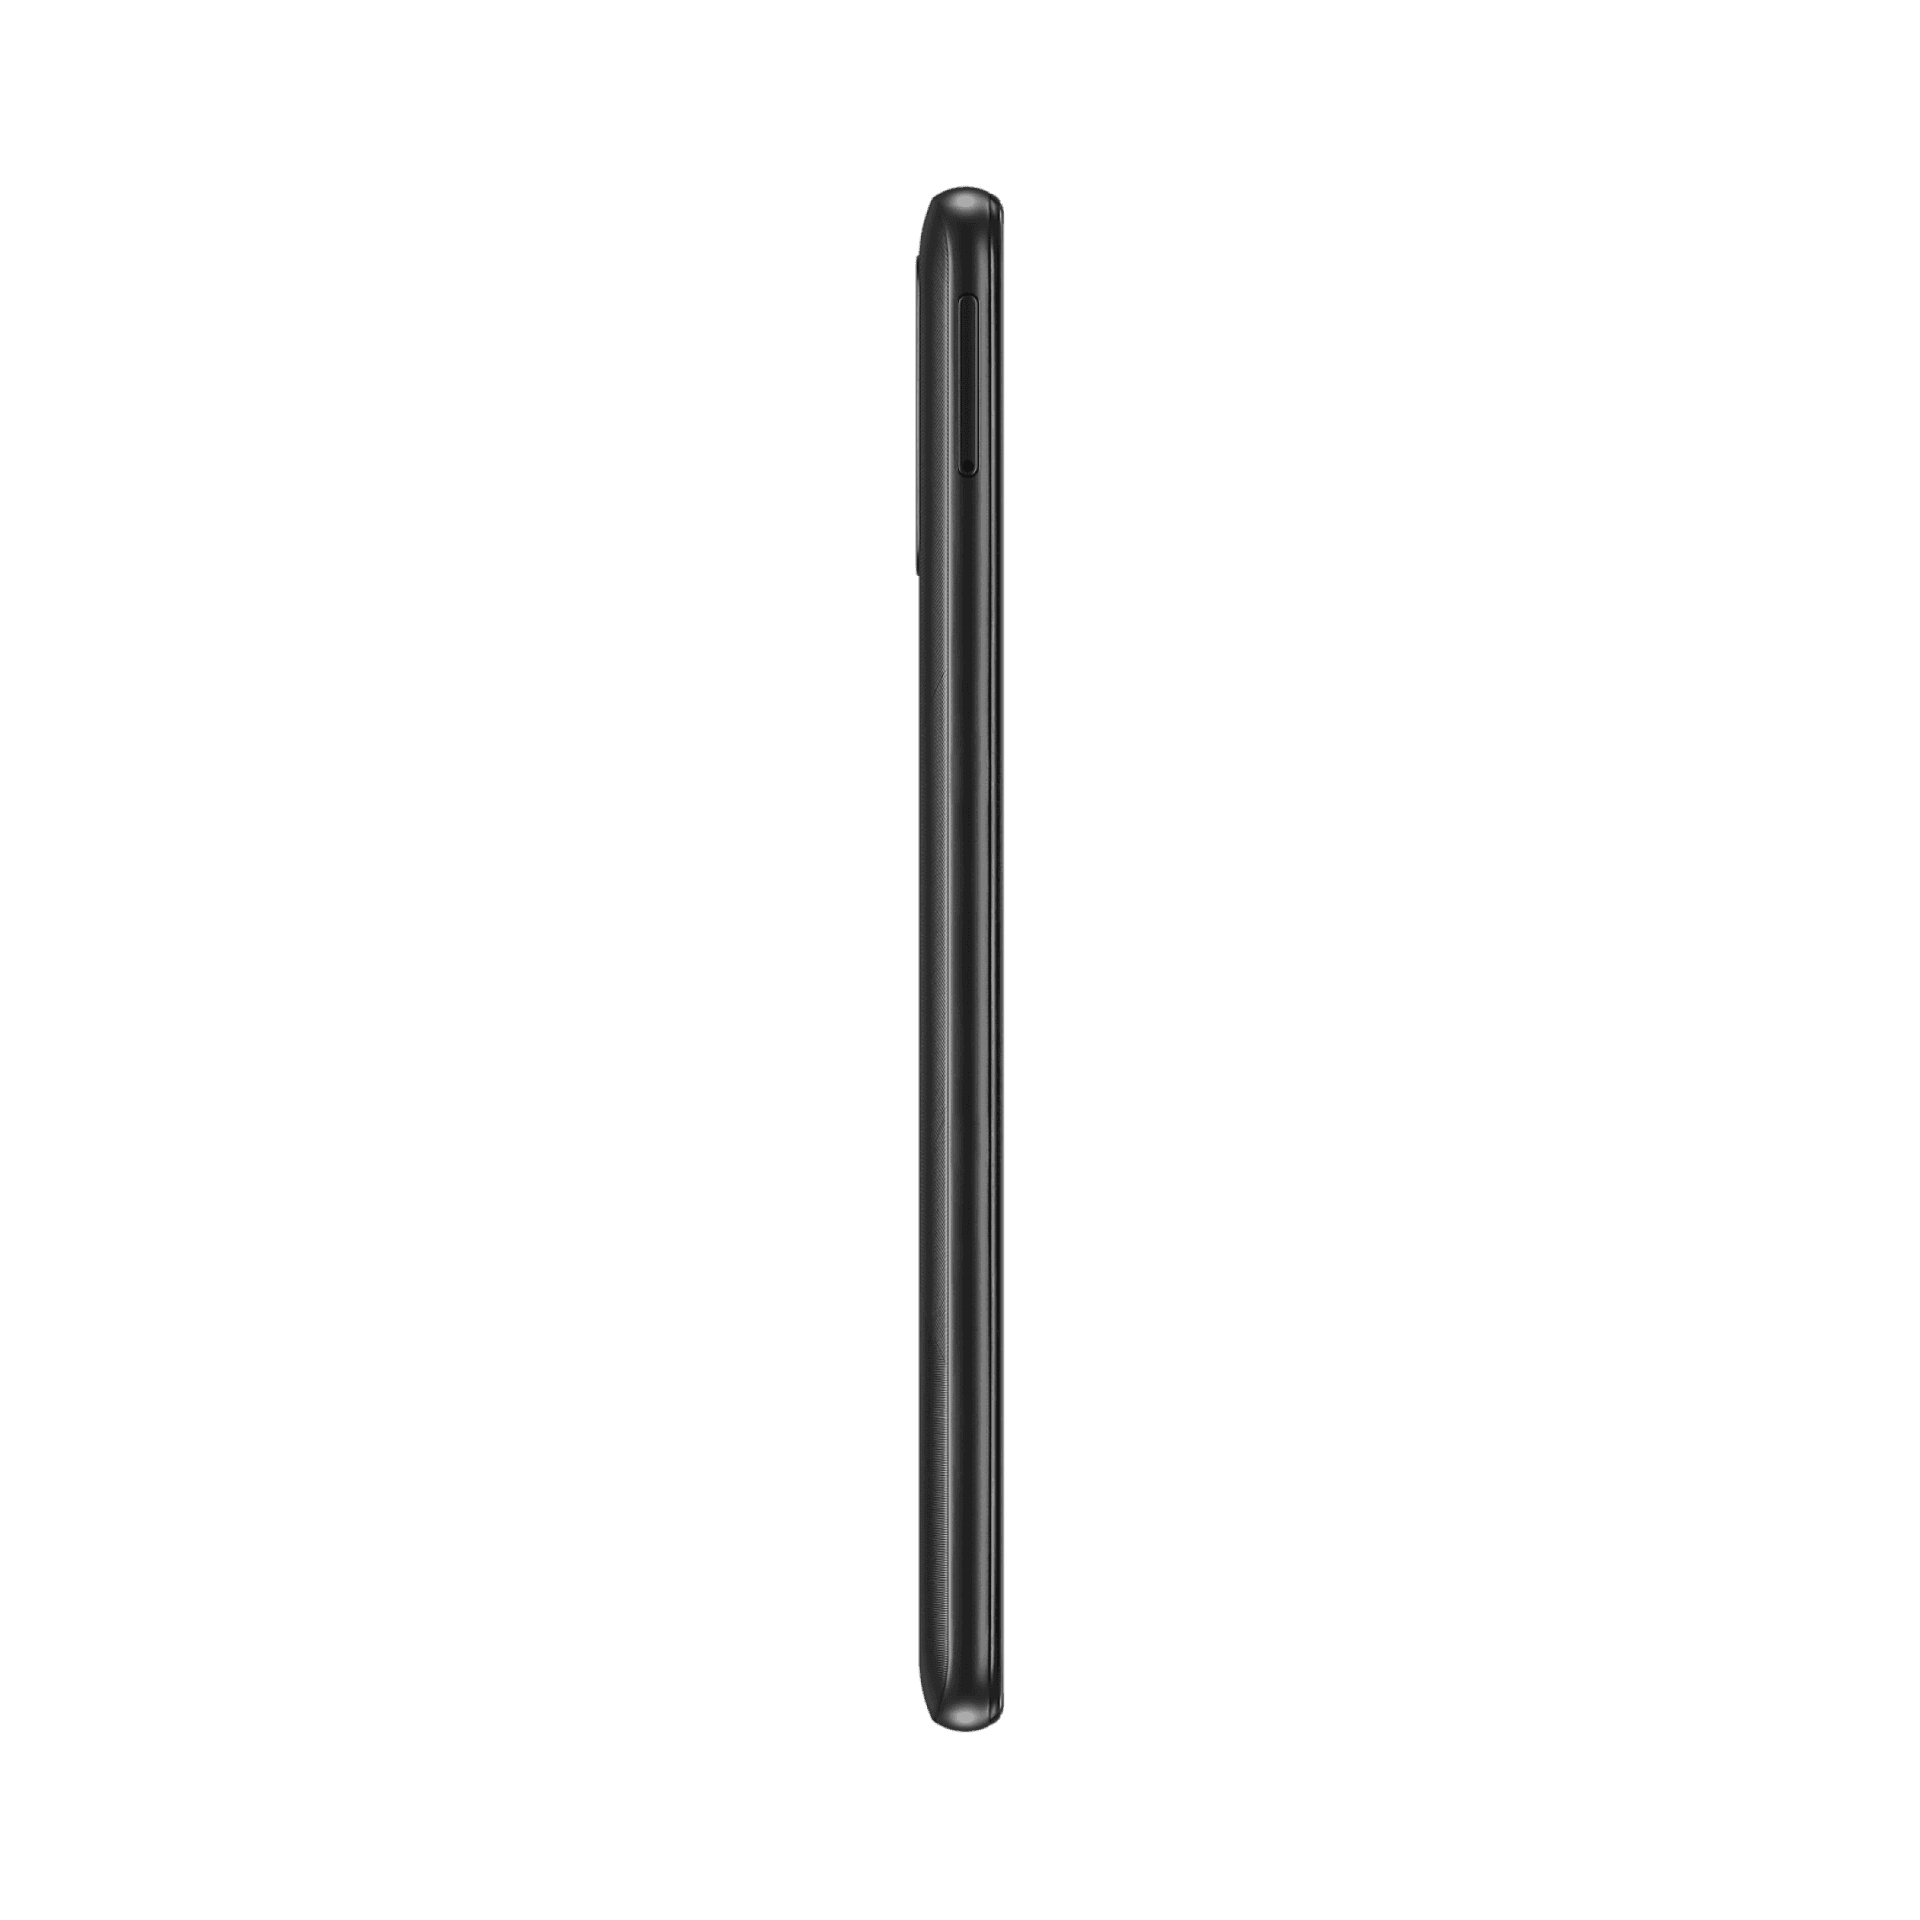 Samsung Galaxy A02s - 32 GB - Siyah